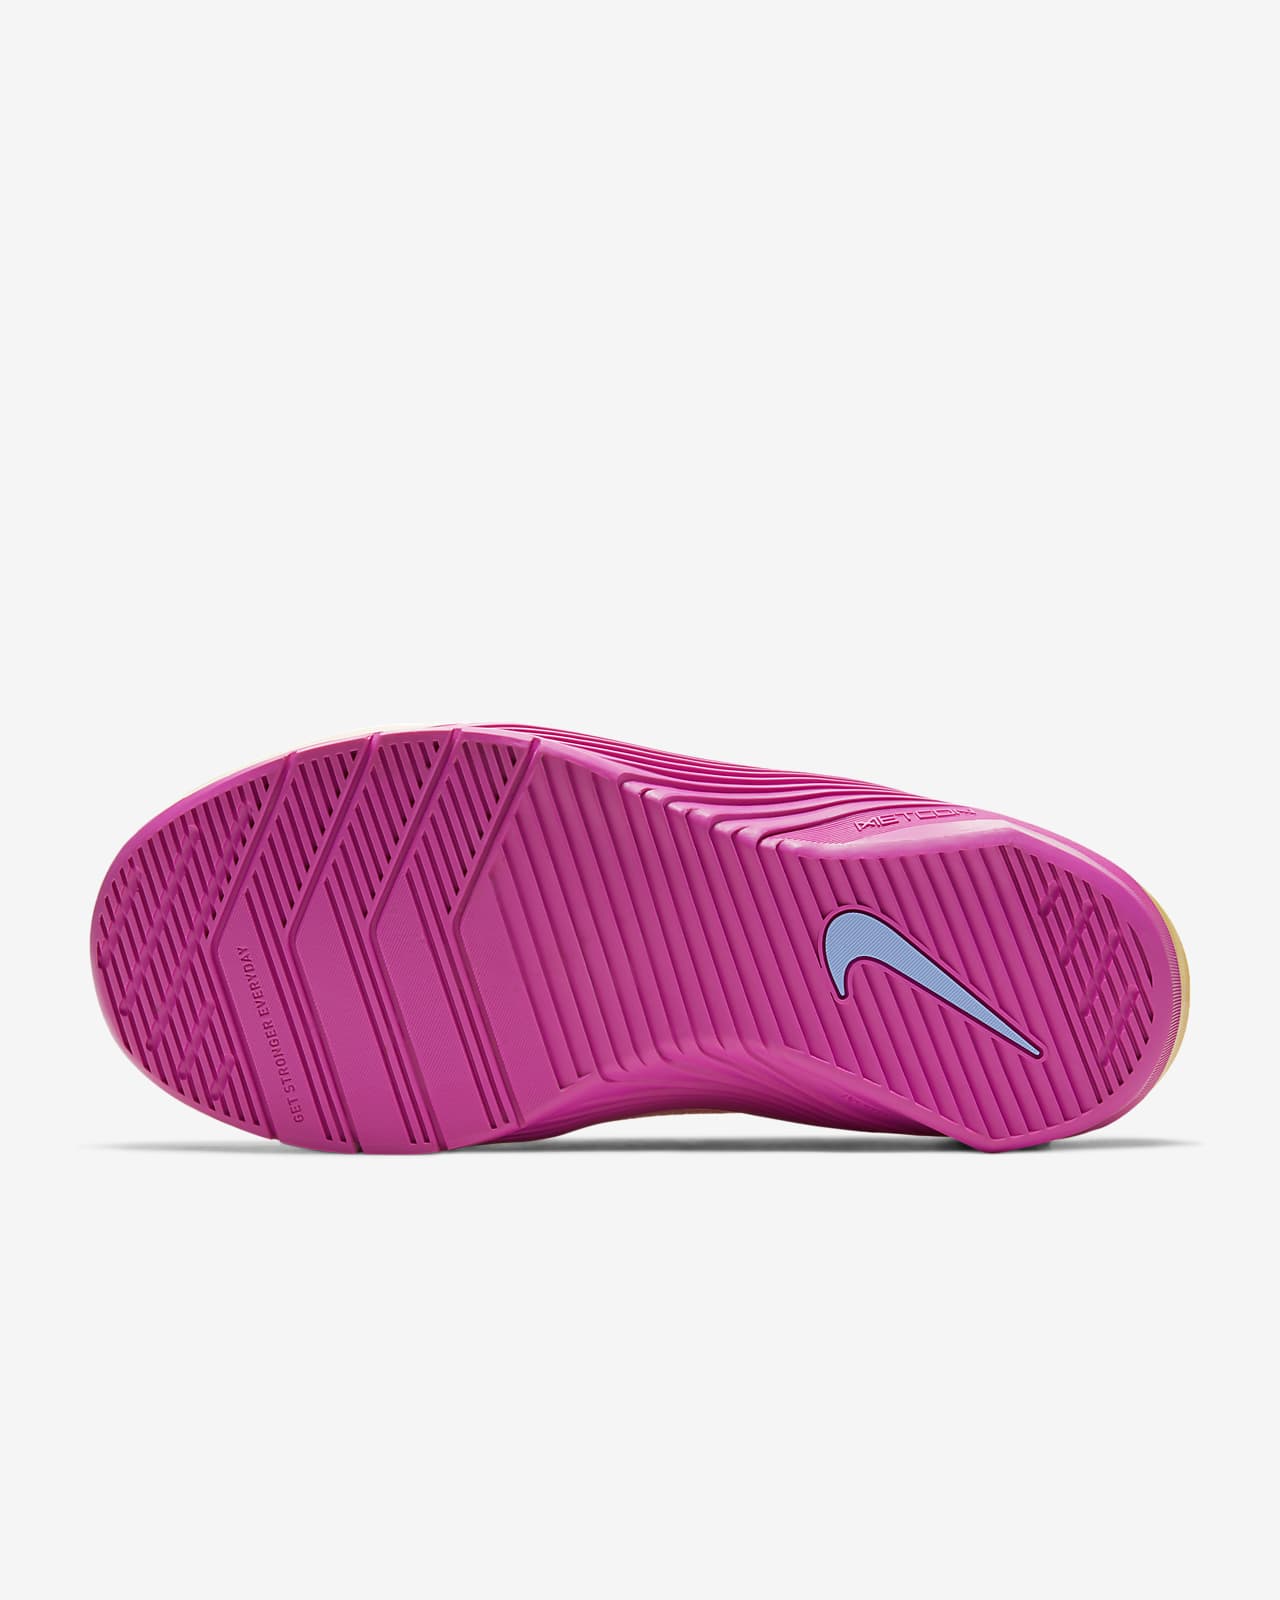 Nike Metcon 5 Women's Training Shoe 